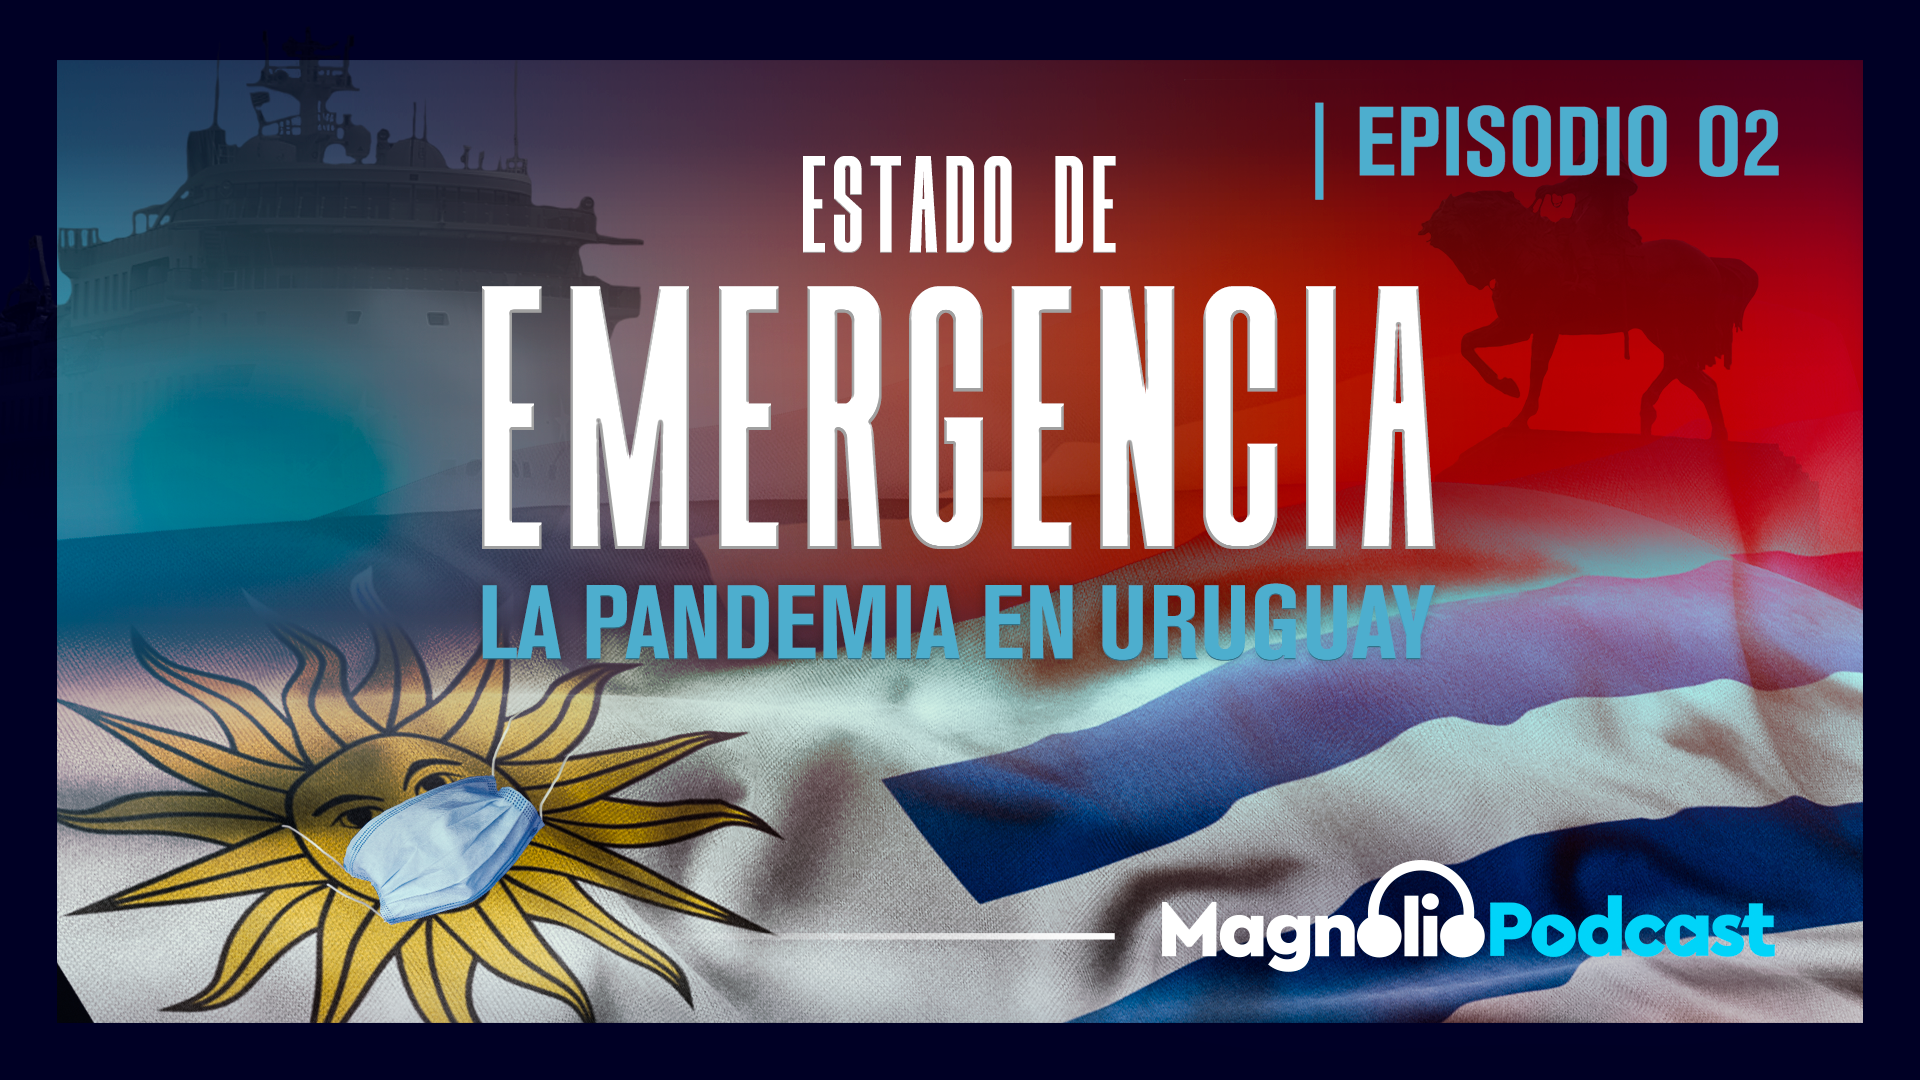 Una gestión a la uruguaya